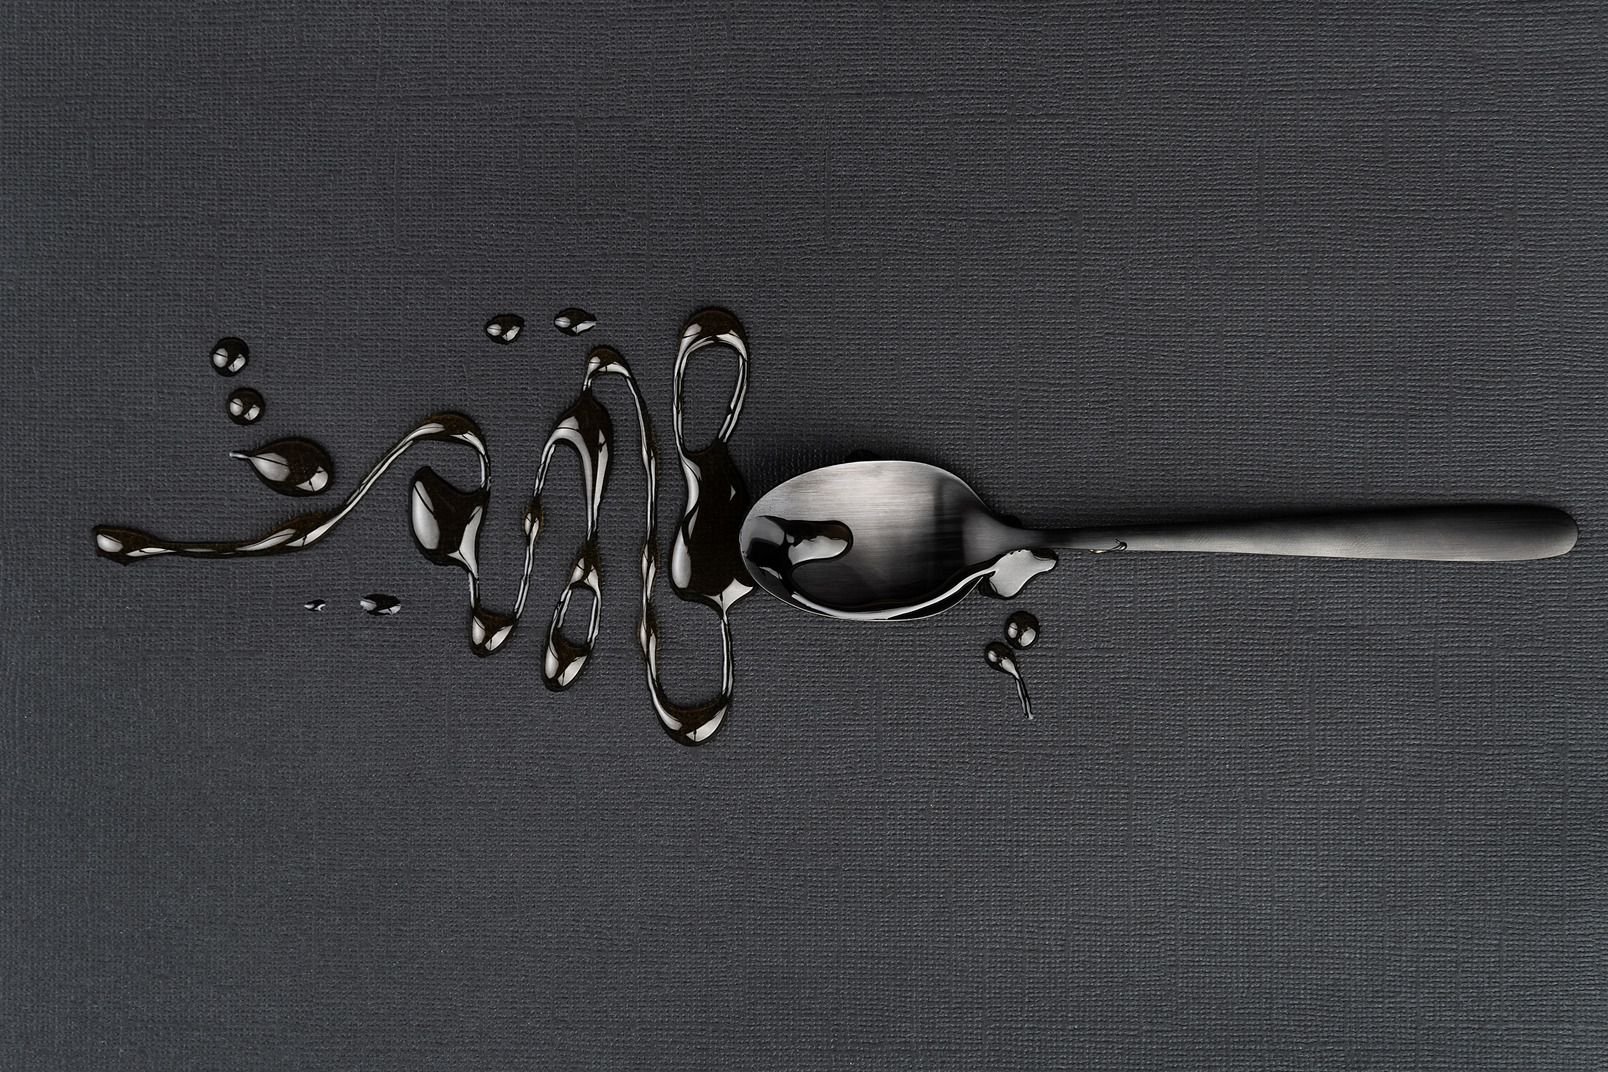 Tea spoon with liquid on the black